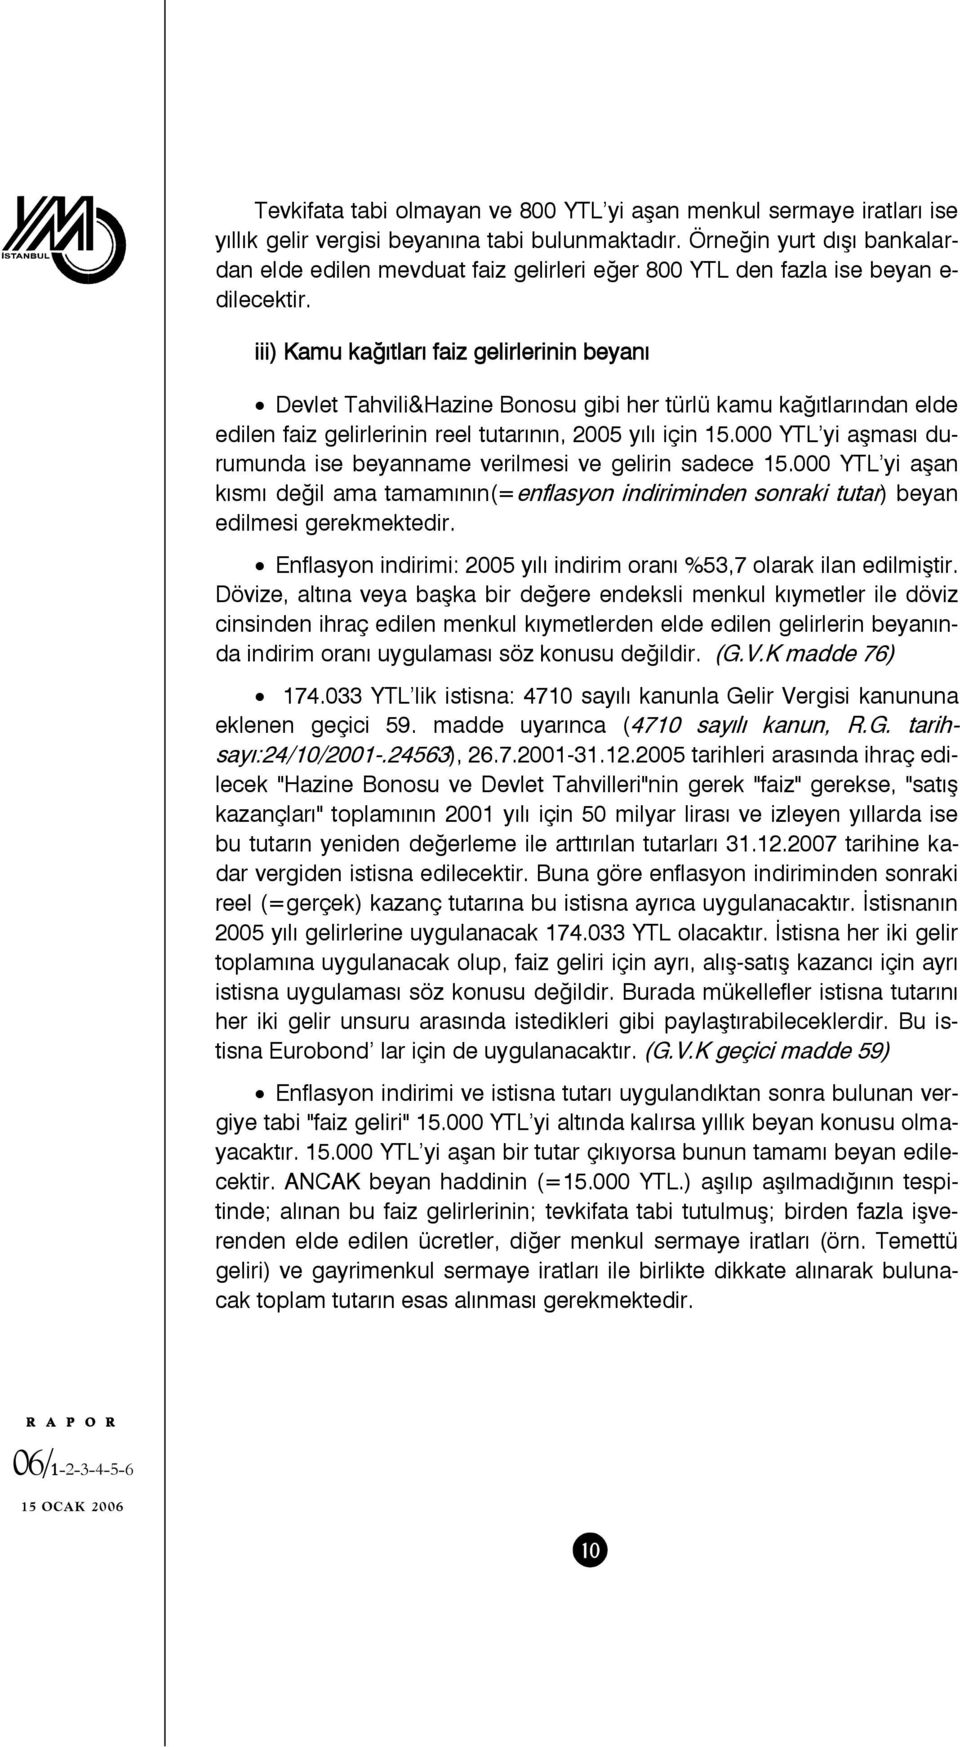 iii) Kamu kağıtları faiz gelirlerinin beyanı Devlet Tahvili&Hazine Bonosu gibi her türlü kamu kağıtlarından elde edilen faiz gelirlerinin reel tutarının, 2005 yılı için 15.